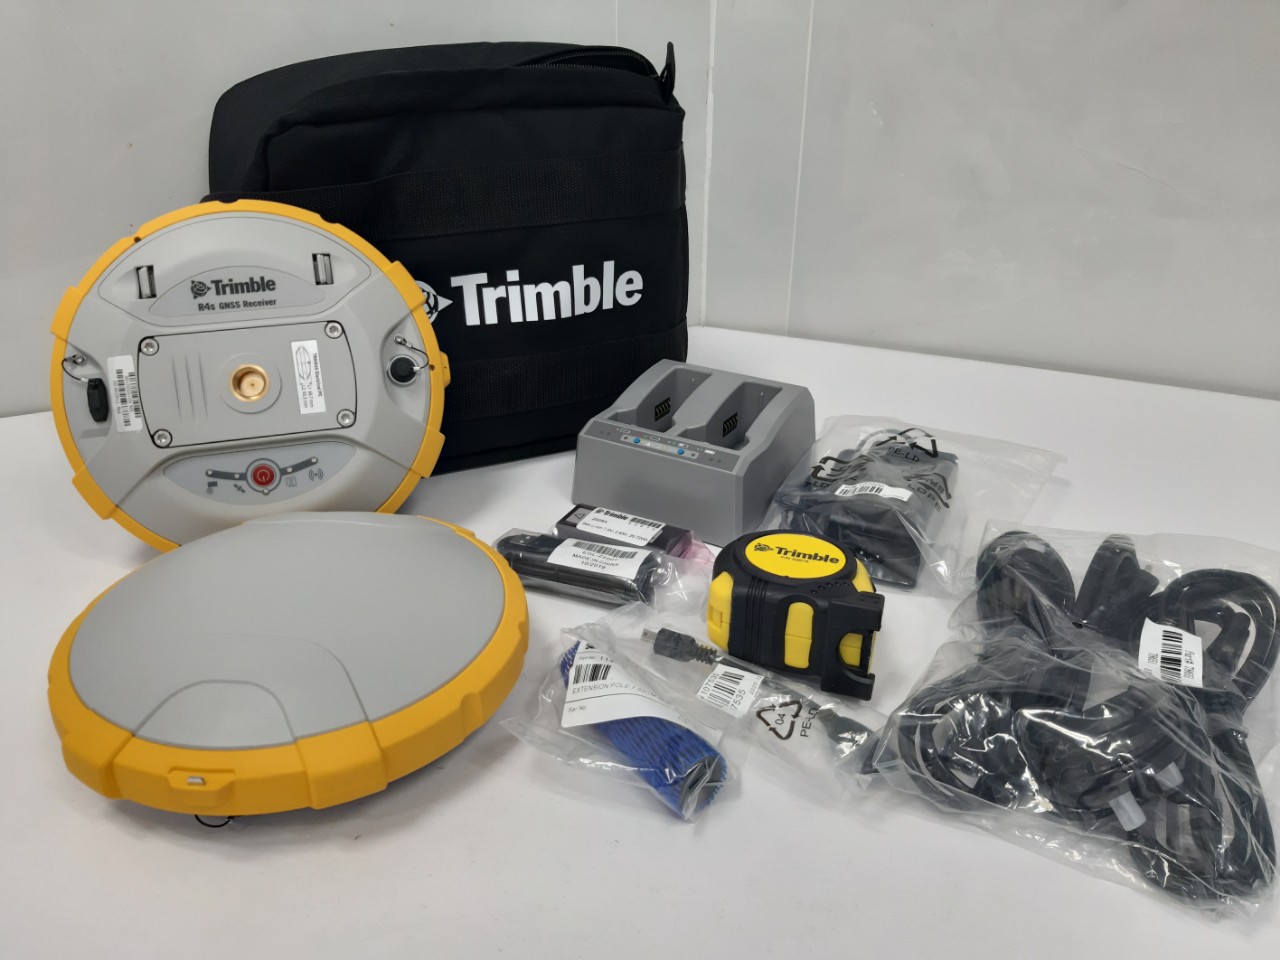 Trimble R4s đáp ứng được mọi nhu cầu, phù hợp với nhiều nhu cầu khảo sát và quá trình xử lý sau đơn giản, từ GIS cho đến các giải pháp tinh vi có khả năng RTK và Trimble RTX.